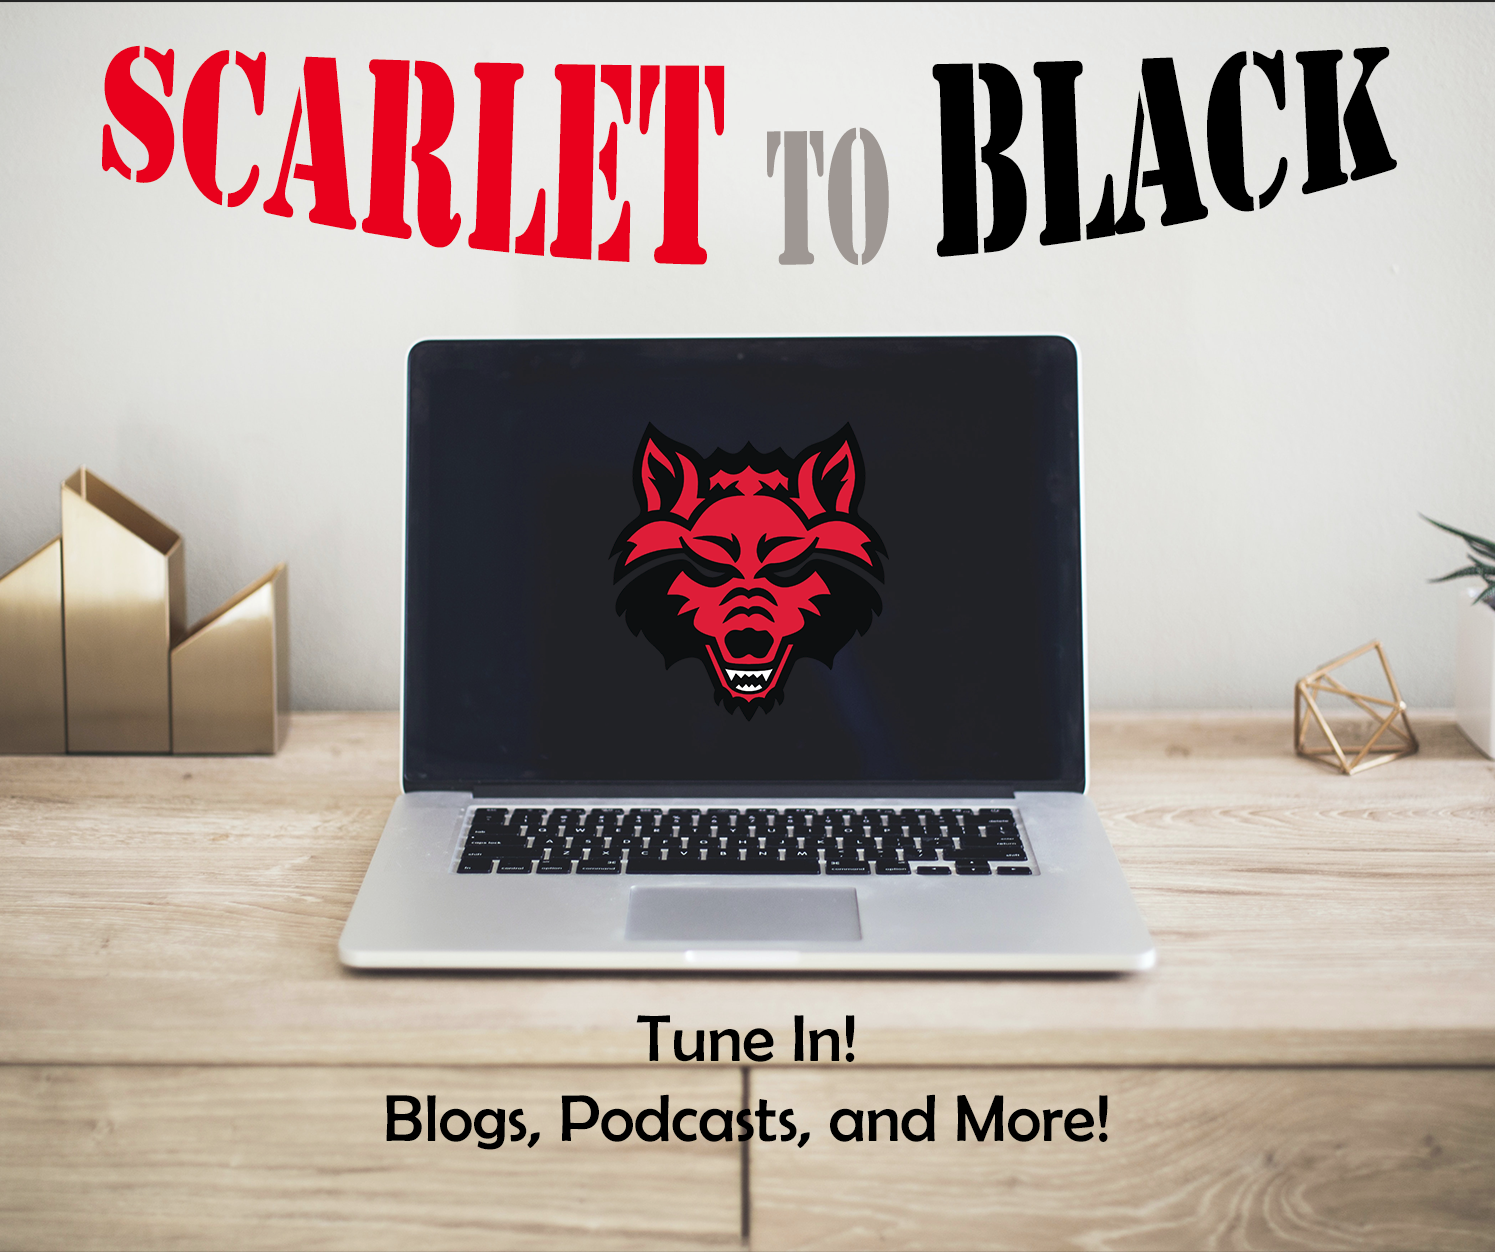 Scarlet to Black Programming Image